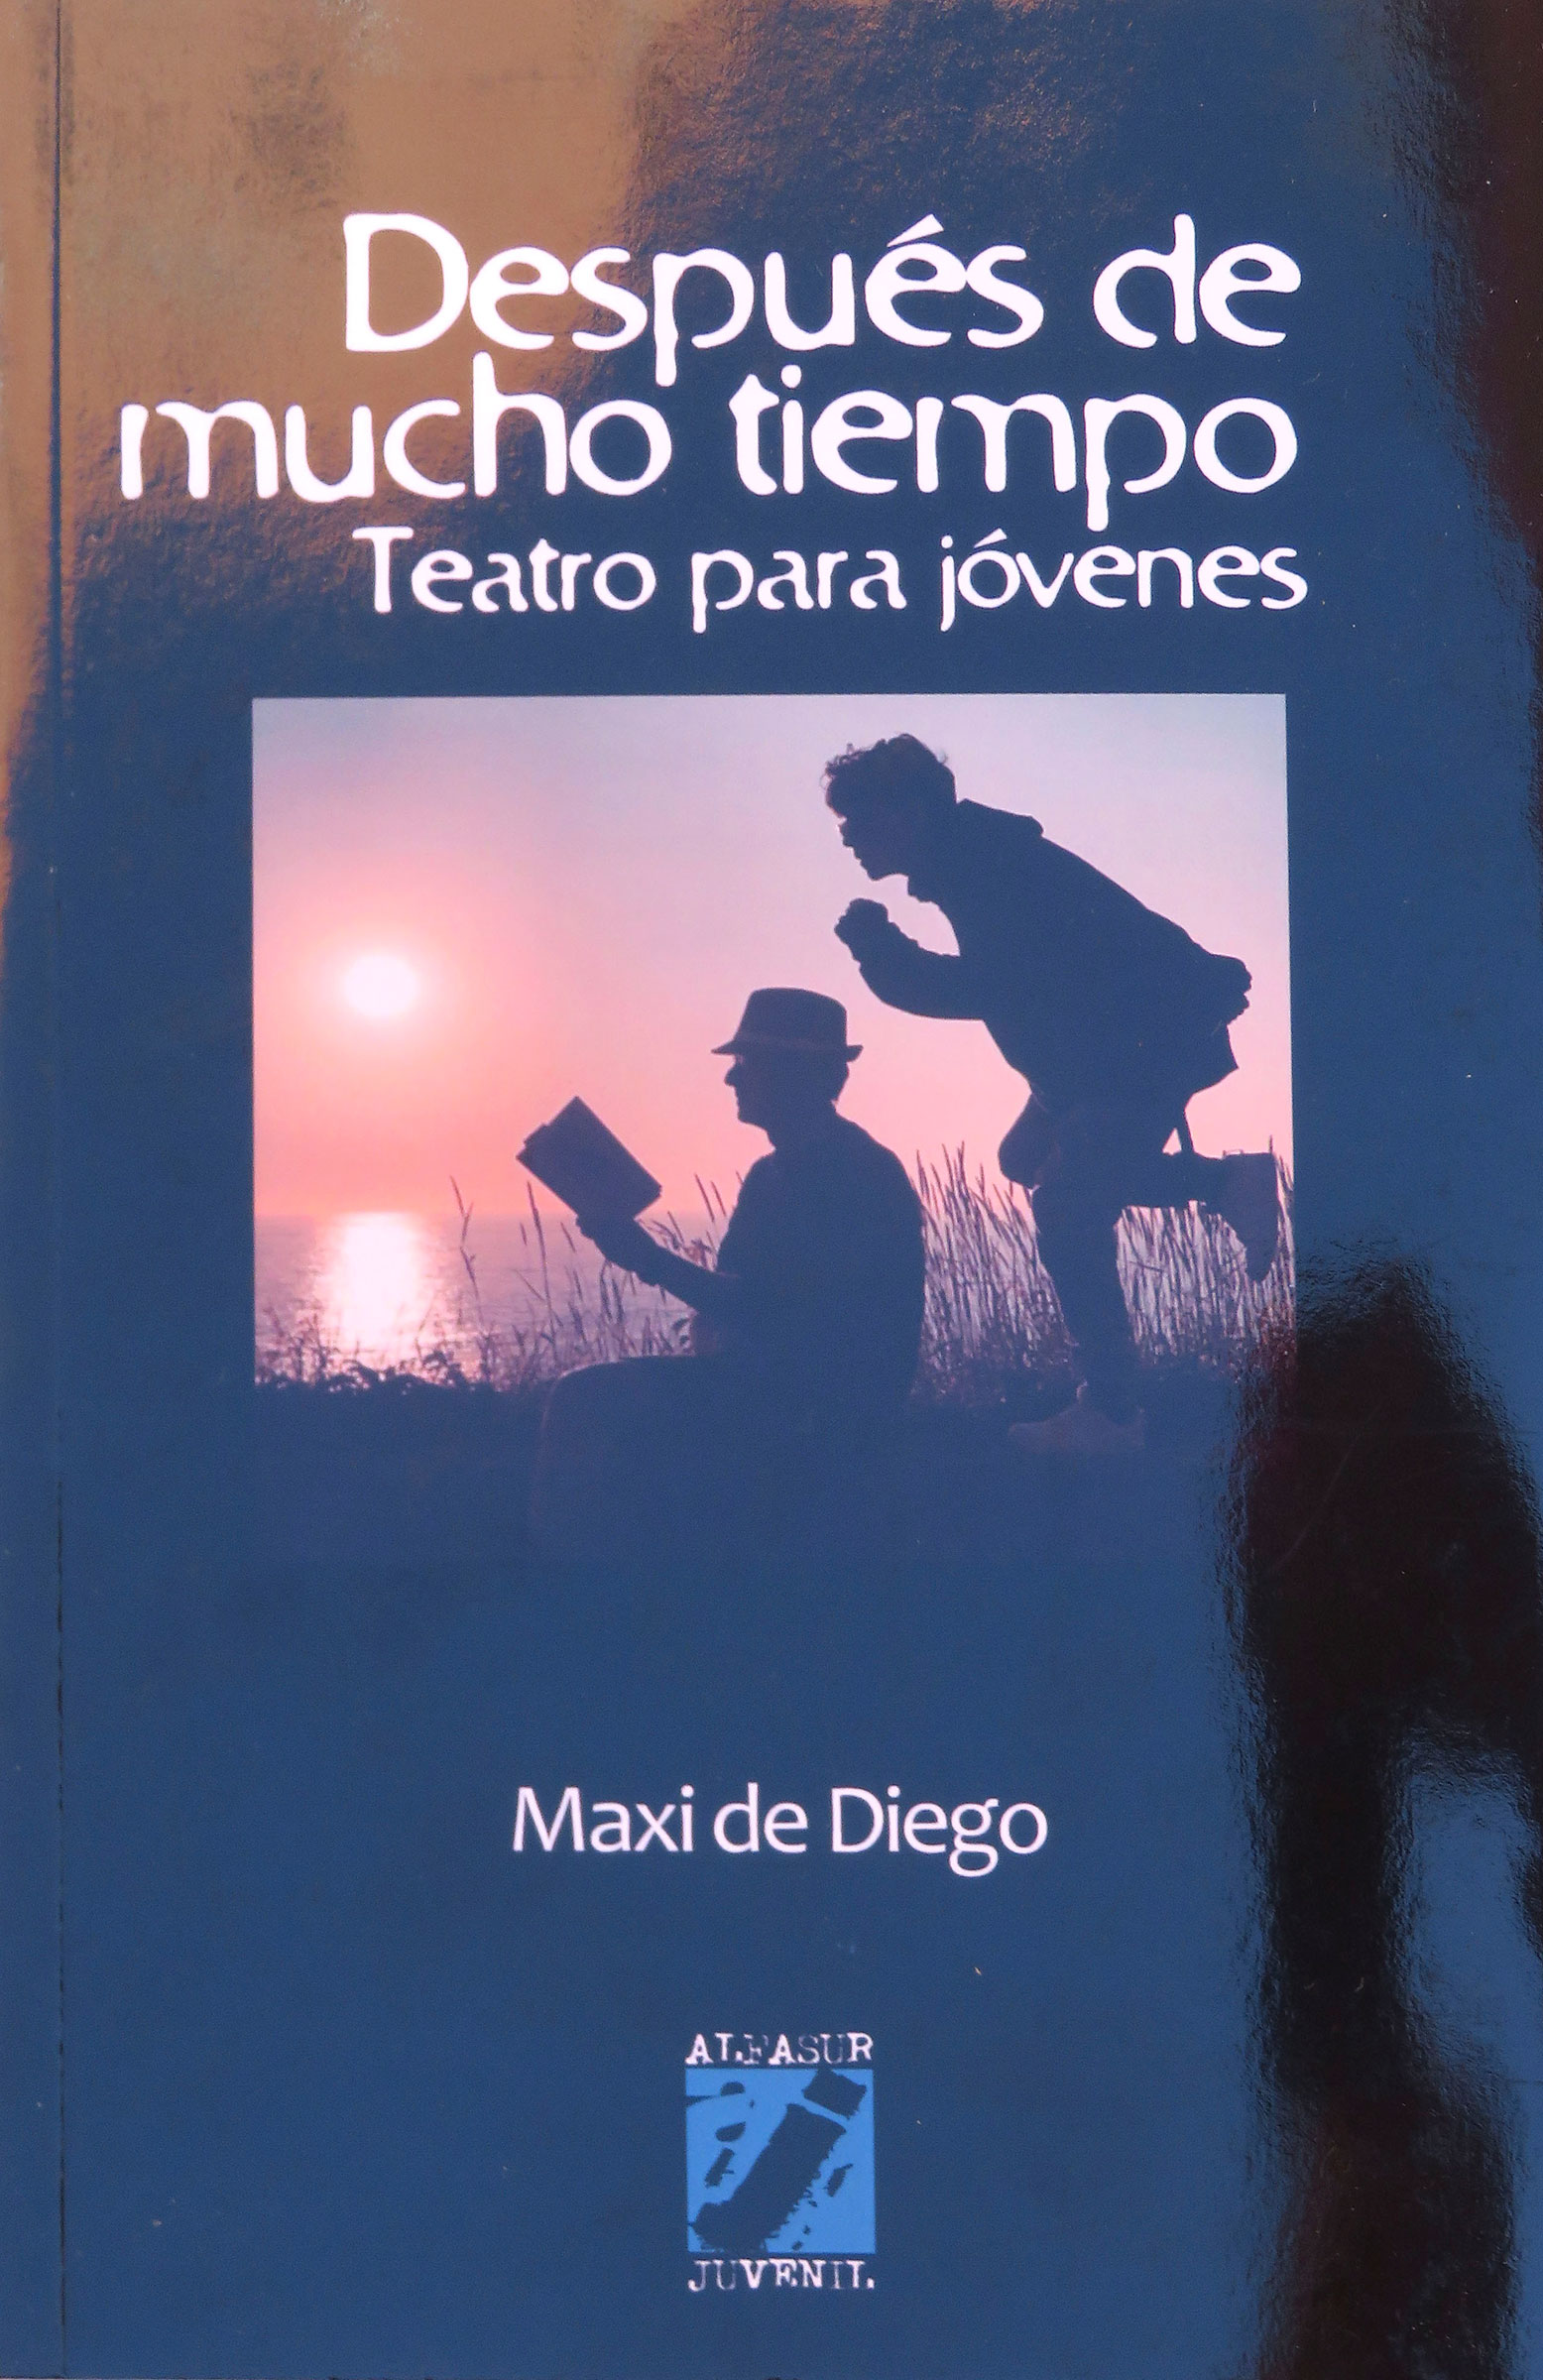 Maxi de Diego nos presenta Despues de mucho tiempo libro